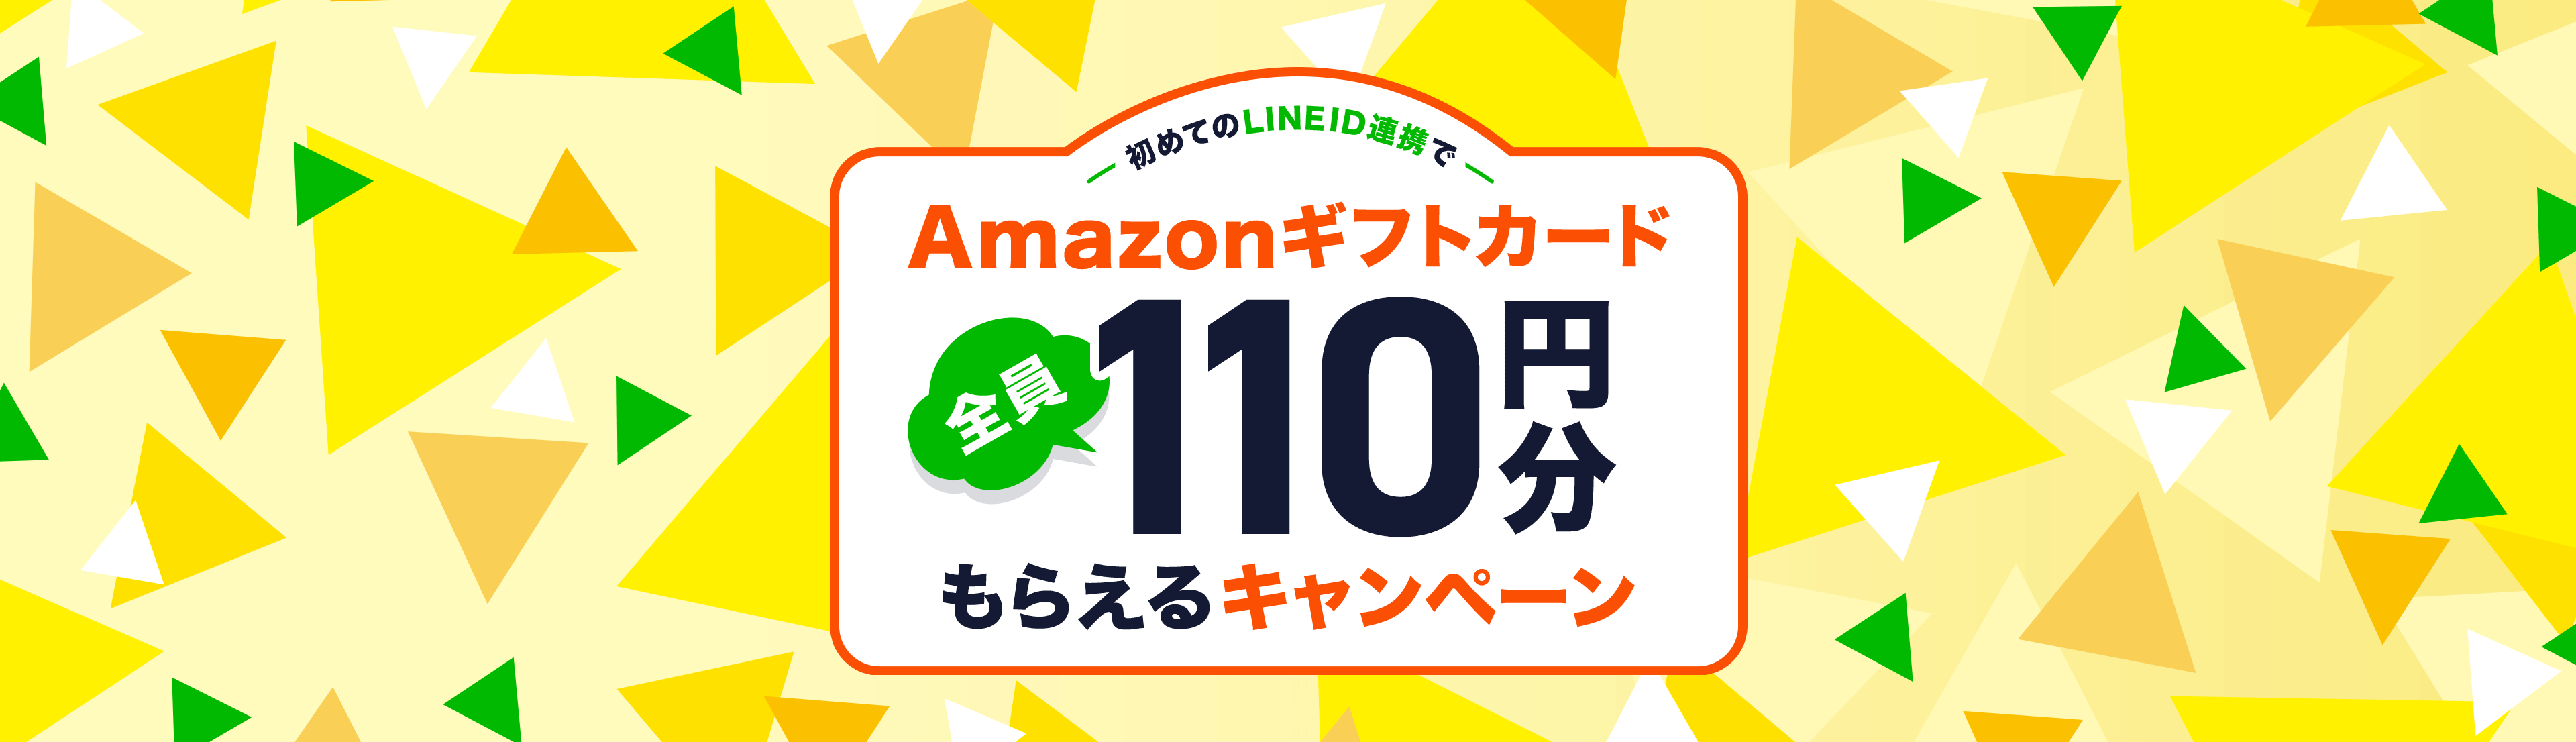 初めてのLINE ID連携でAmazonギフト券全員100円分もらえるキャンペーン